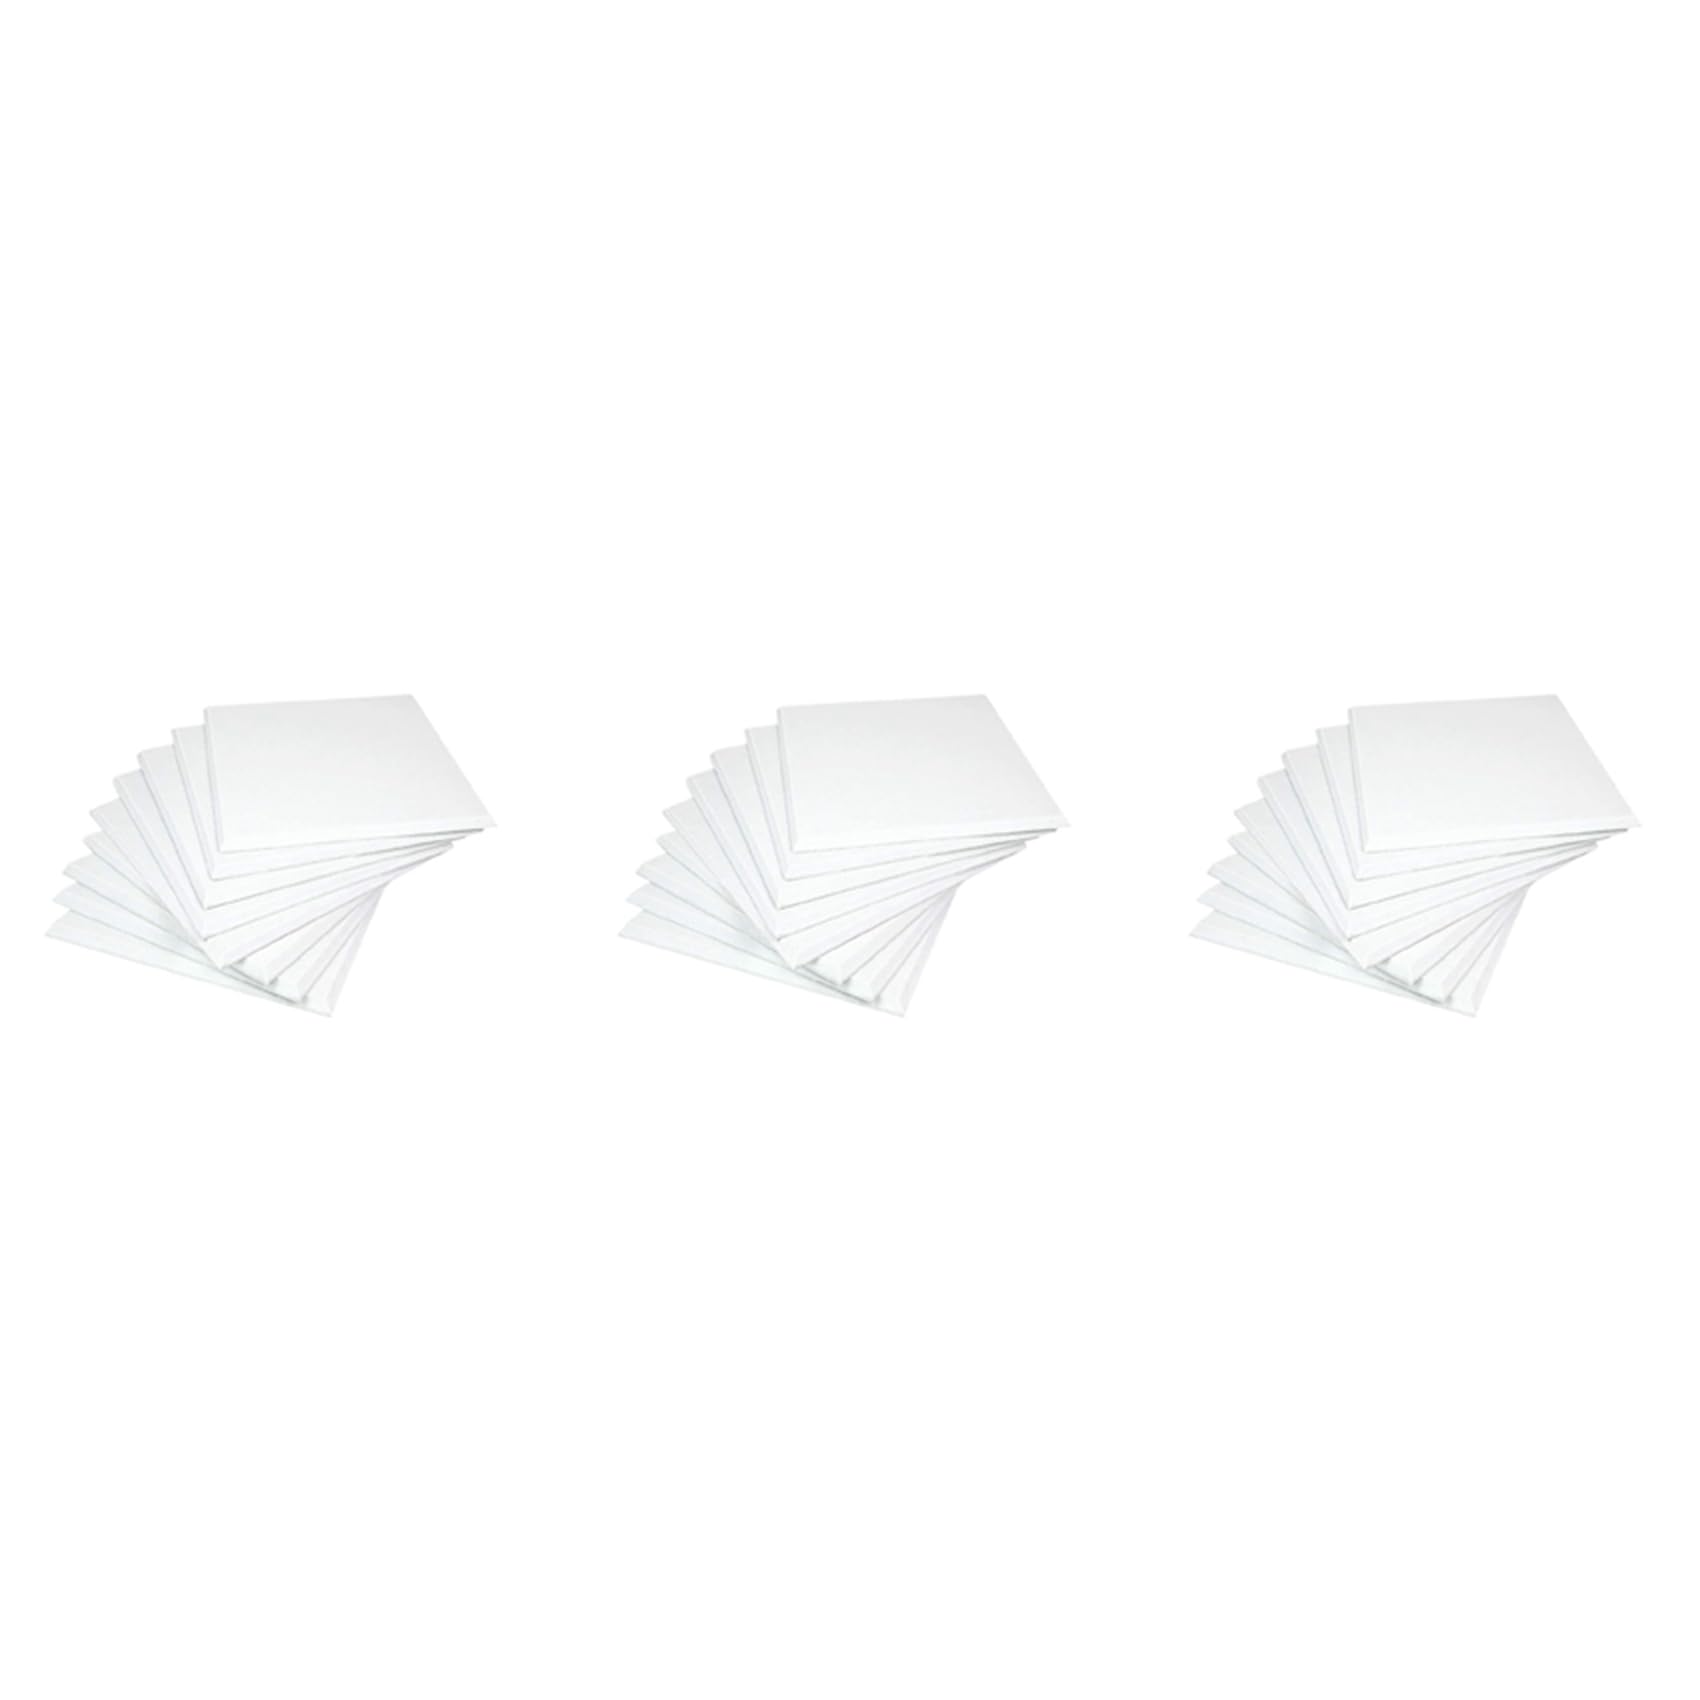 ZOMTTAR Akustikplatten, weiß, 36 Stück, hohe Dichte, abgeschrägte Kanten, für Wanddekoration und akustische Behandlung